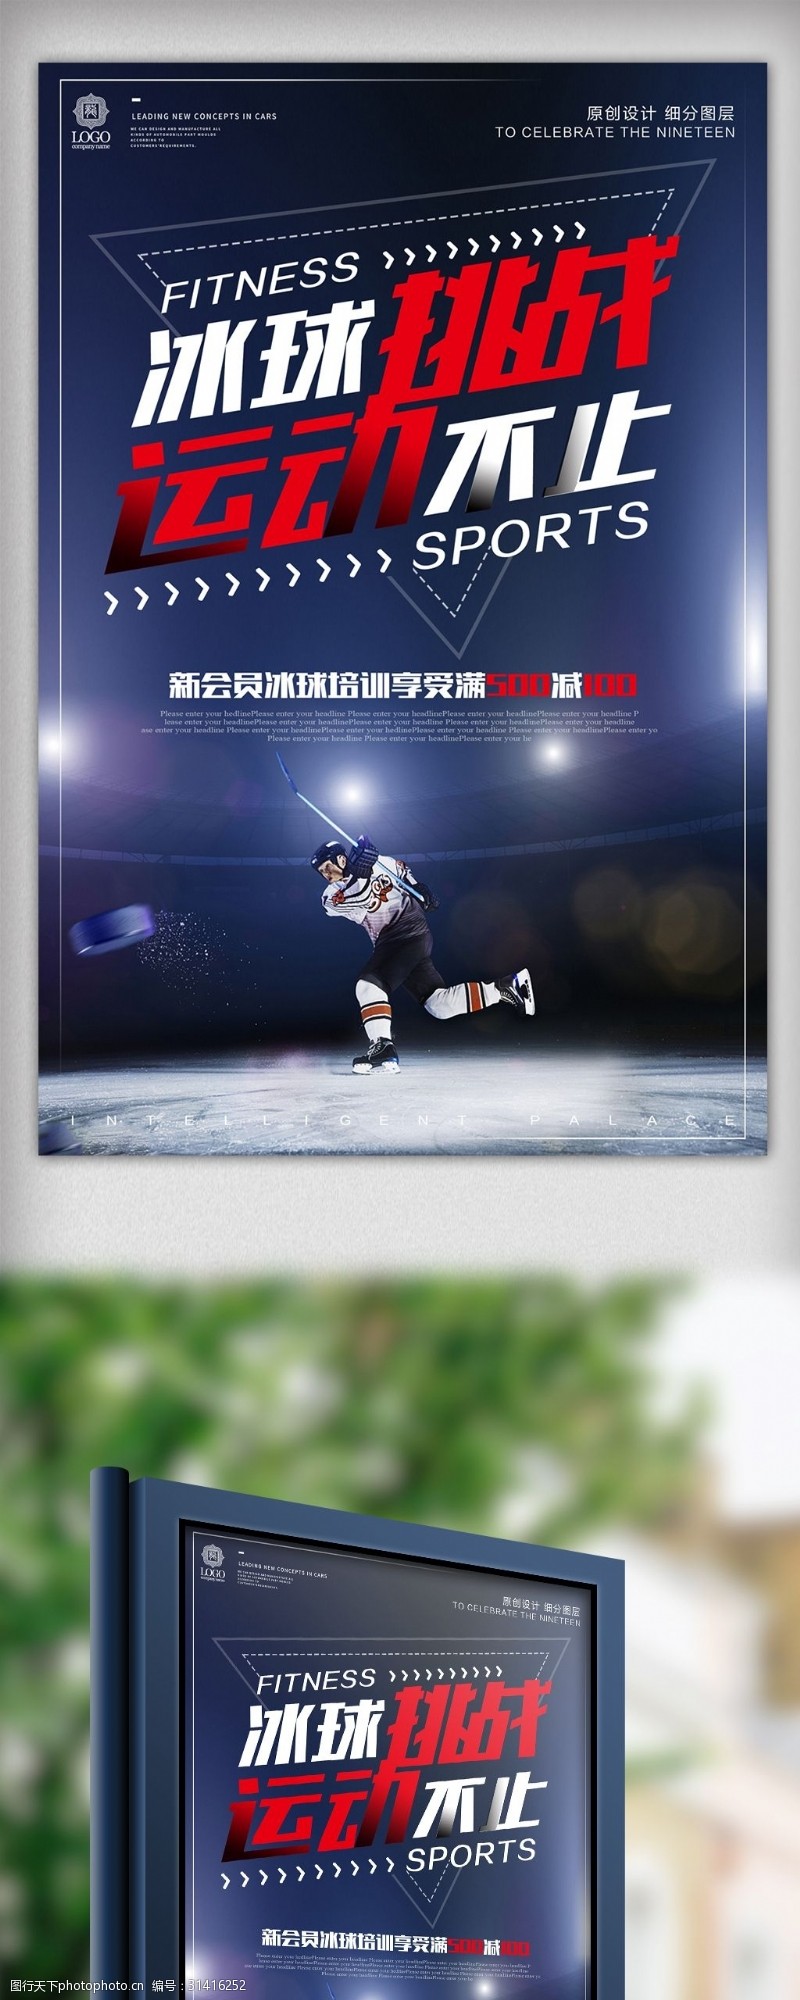 曲棍球比赛酷炫时尚冰球运动宣传海报